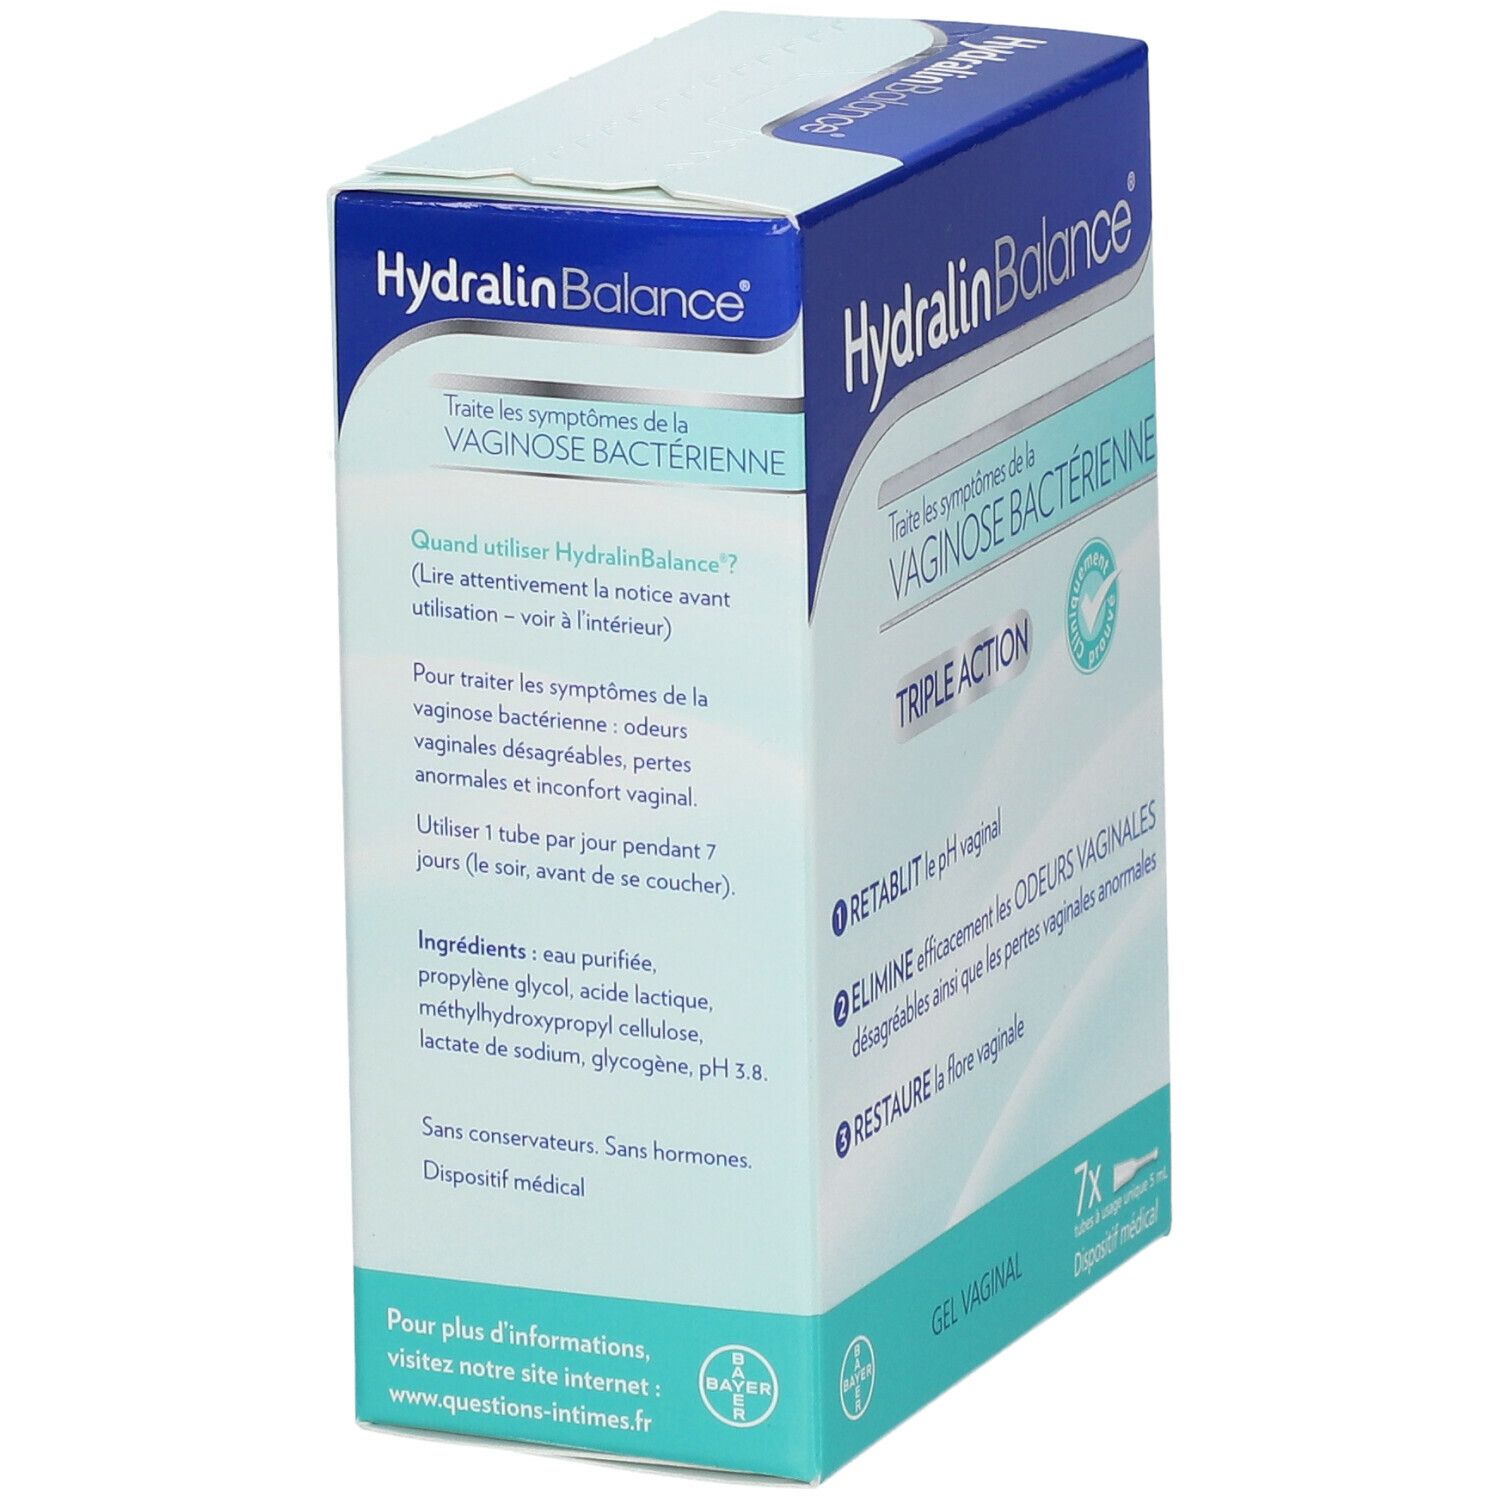 Hydralin Balance - Vaginose Bactérienne triple action - 7 tubes de